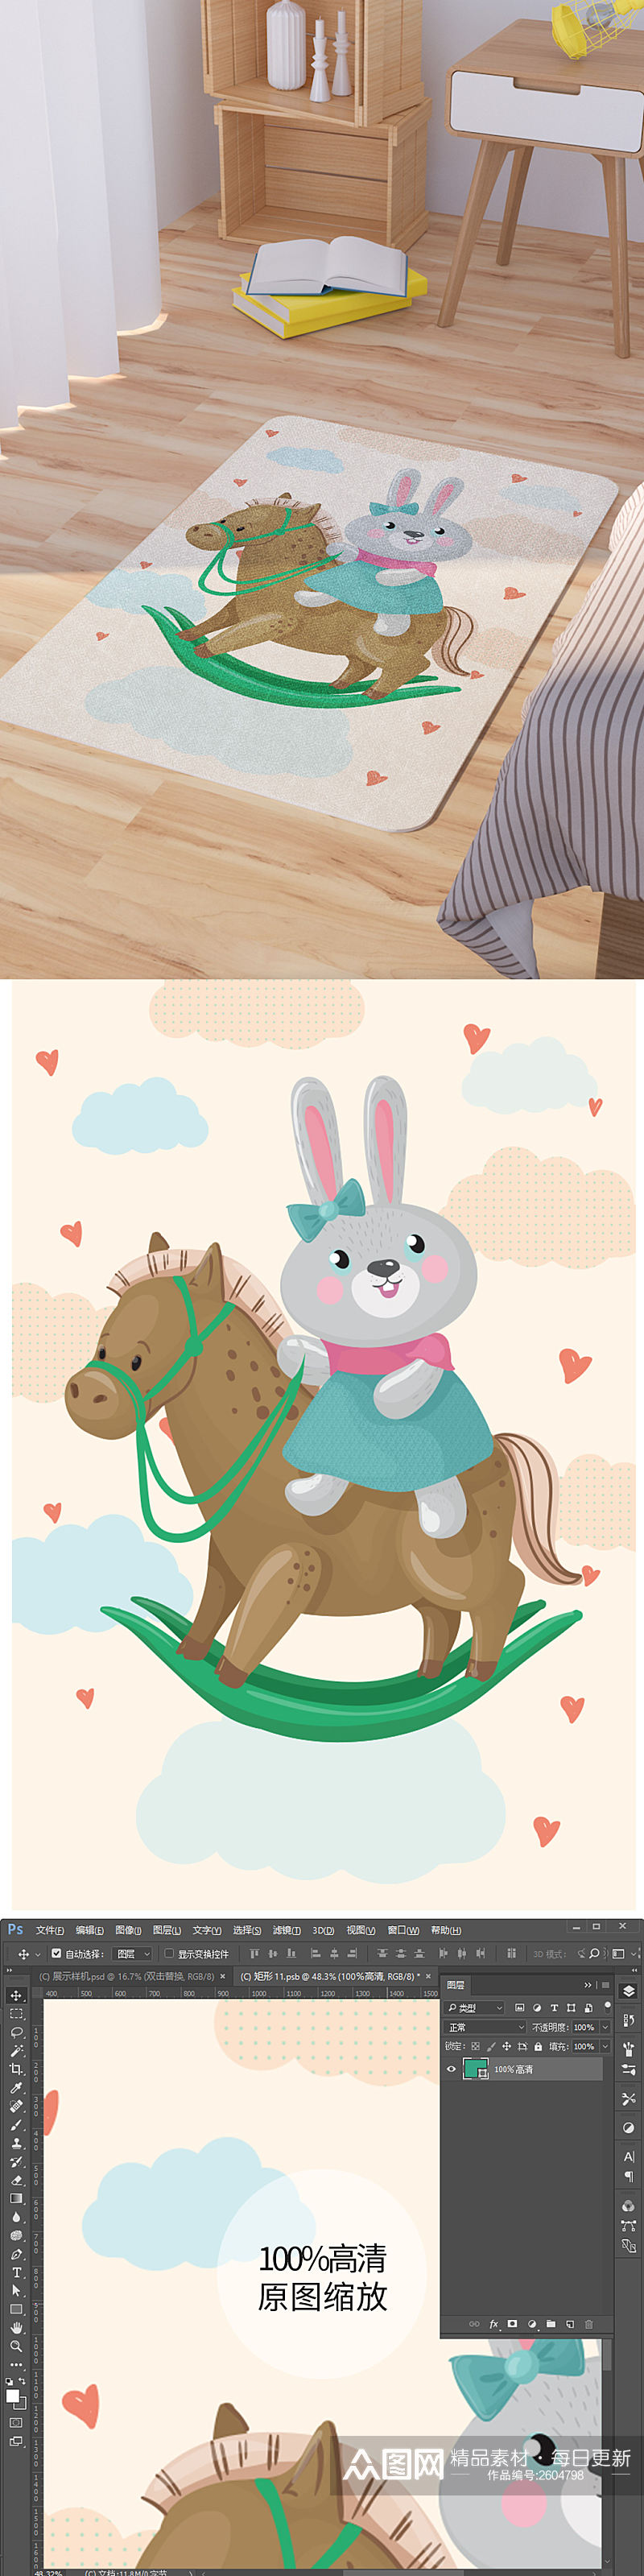 矢量手绘卡通可爱骑木马的兔子脚垫地毯图案素材